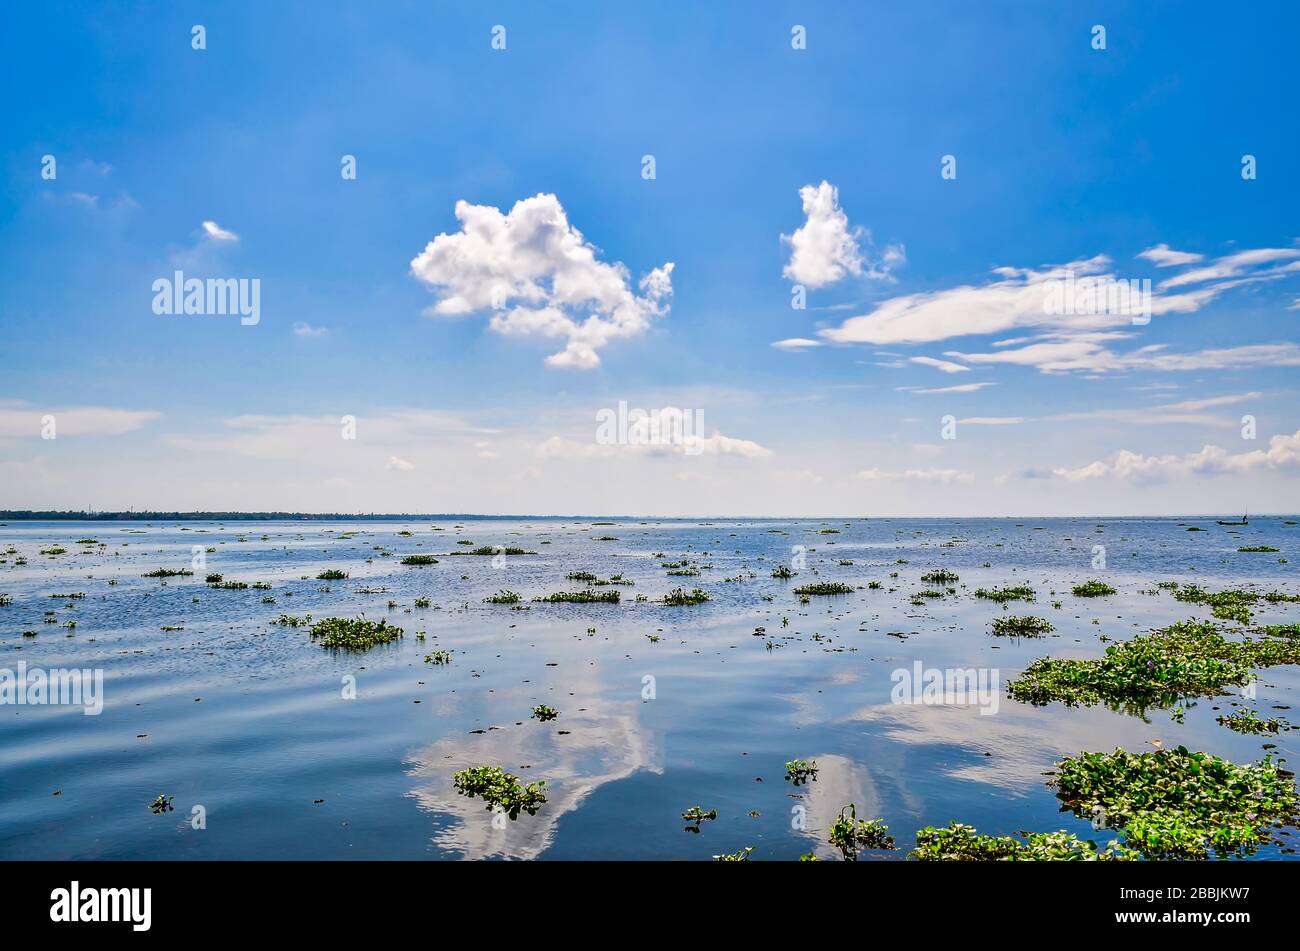 Der riesige Algenhorizont füllte Rückwässer mit einem schönen klaren blauen Himmel, der sich auf der Wasseroberfläche niederschlug. Aus Kerala, Indien. Stockfoto